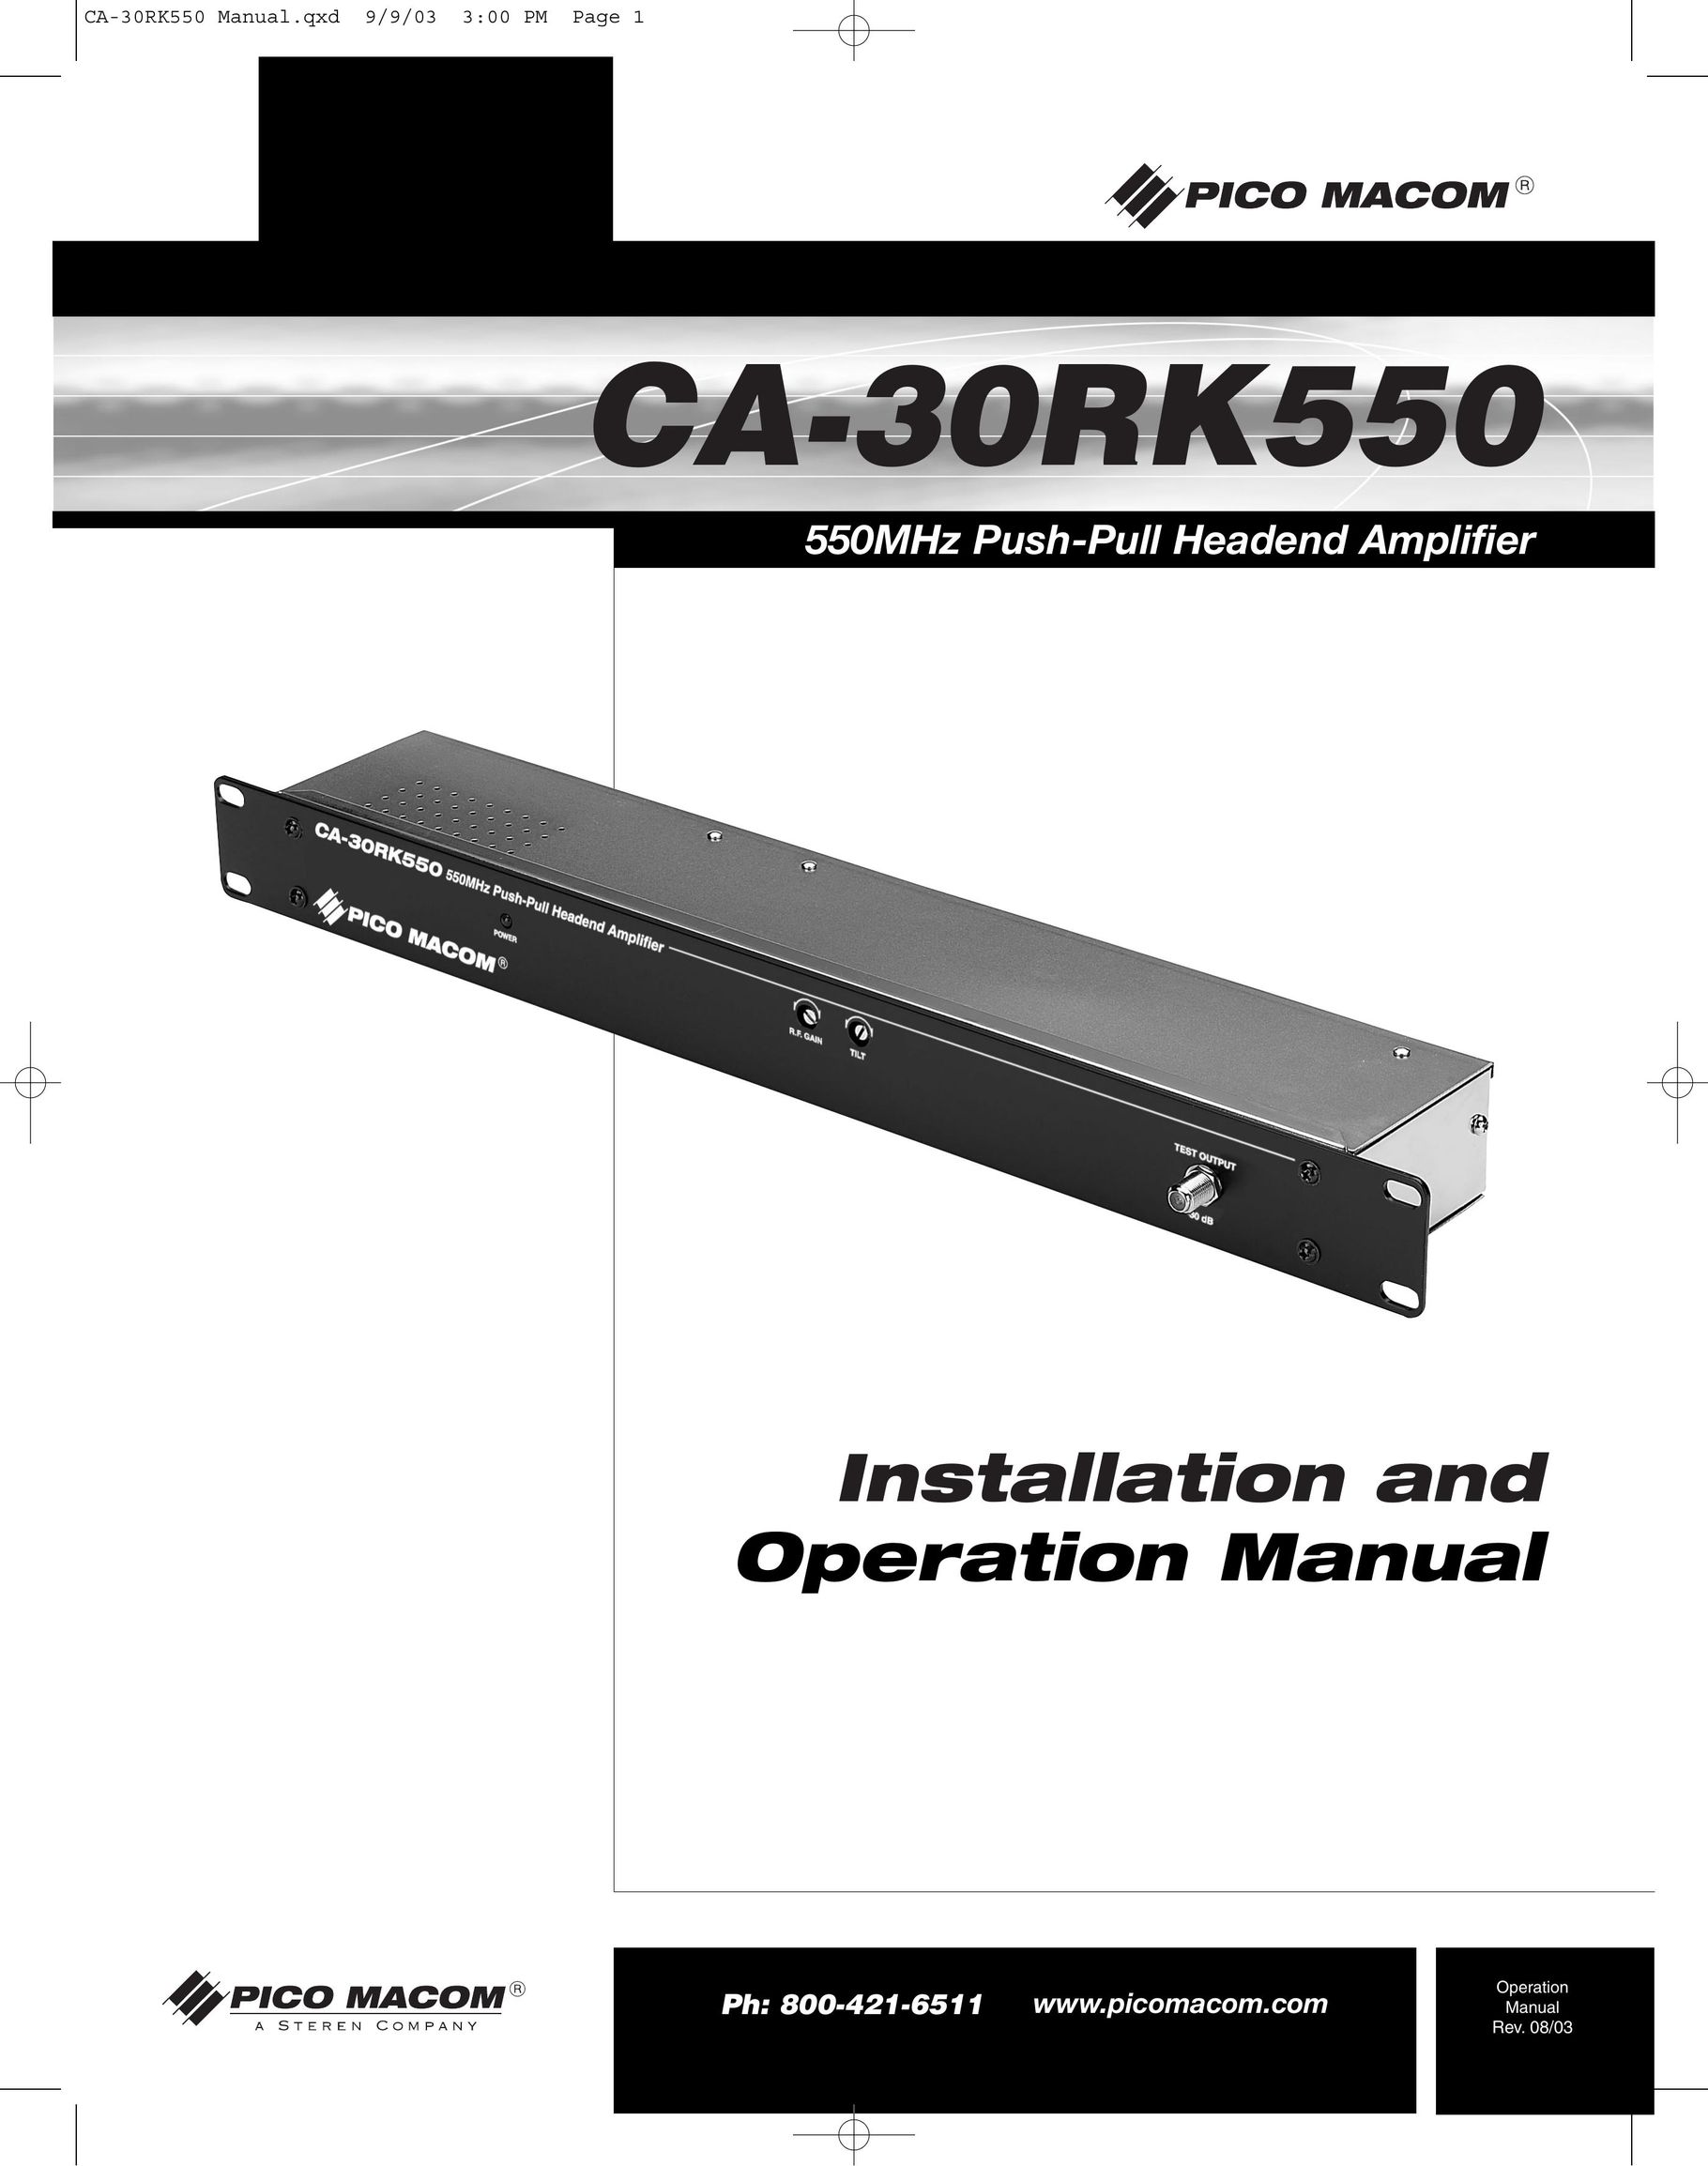 Pico Macom CA-30RK559 Car Amplifier User Manual